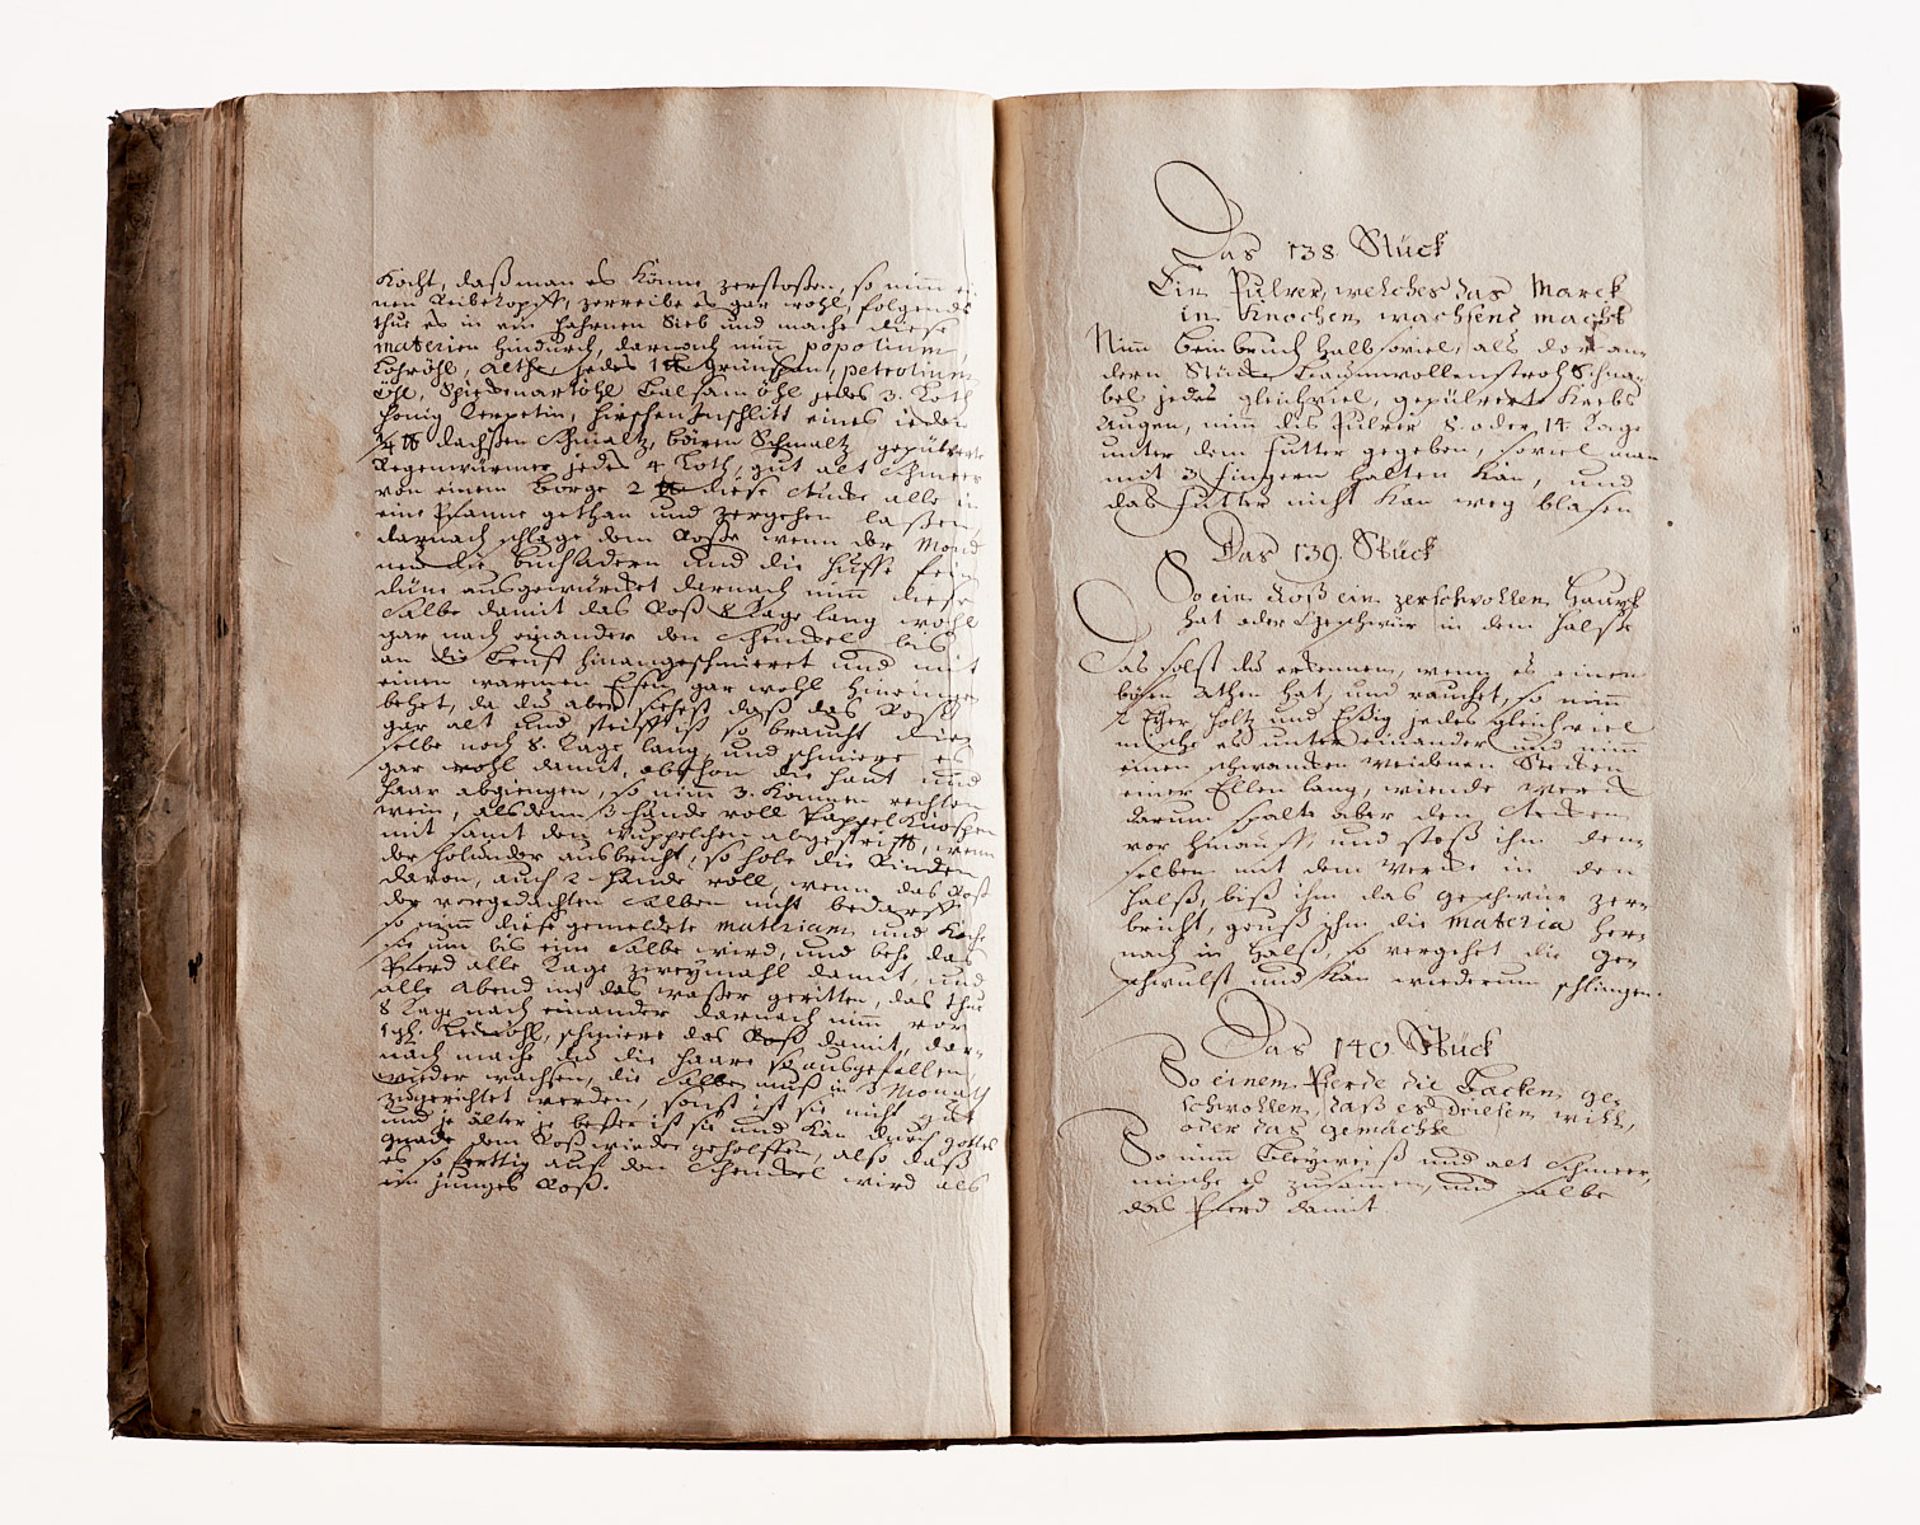   Pferdearzneibuch - Deutsche Handschrift auf Papier. - Bild 3 aus 3